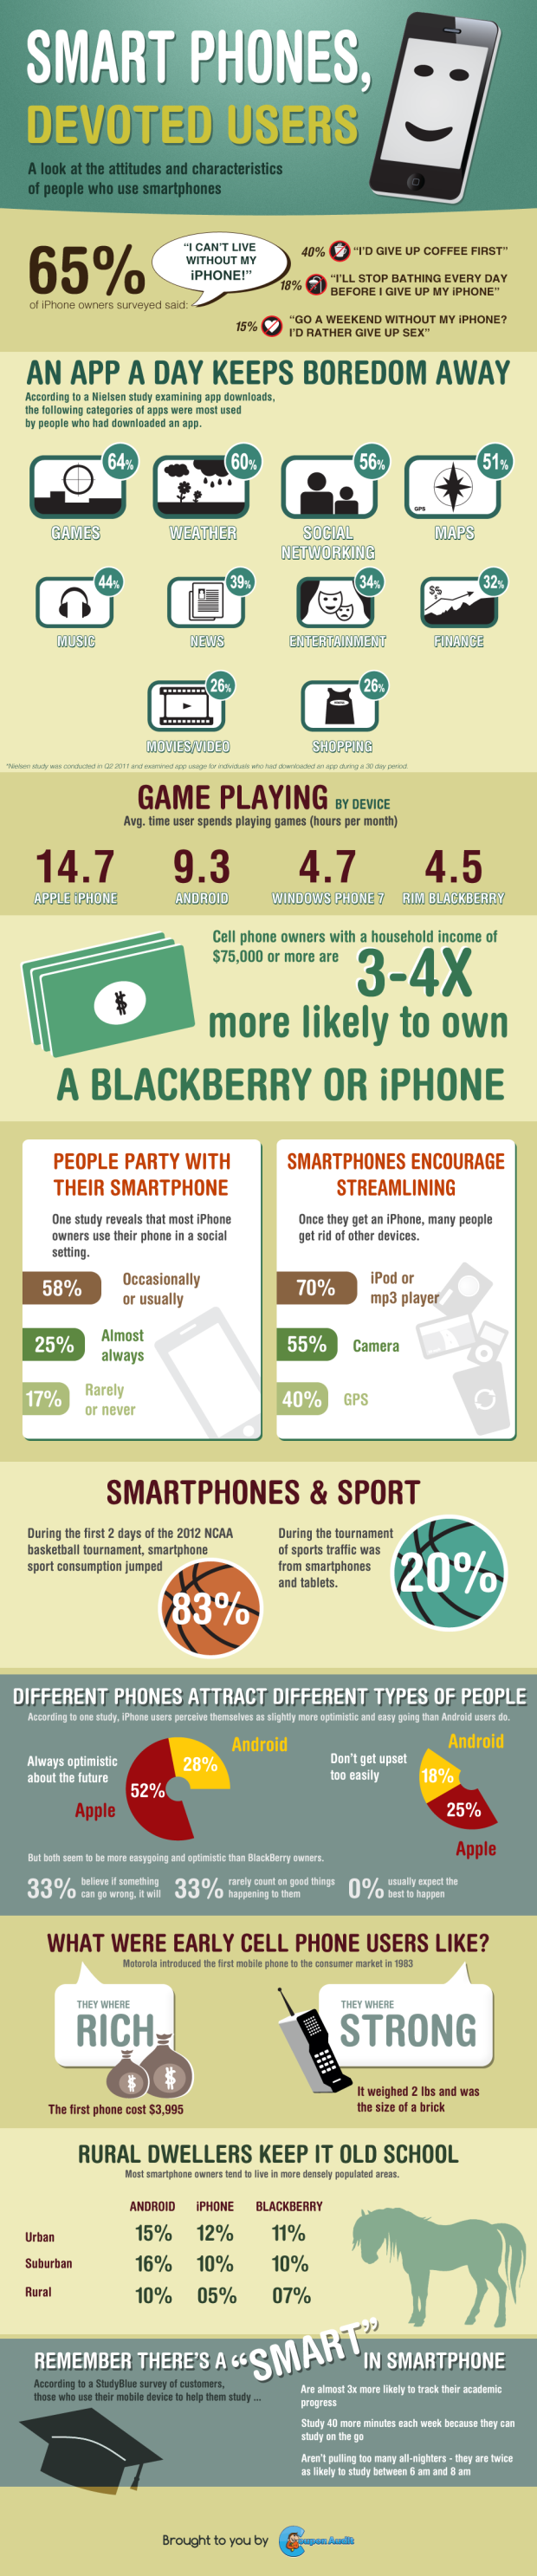 Smartphones - Devoted Users